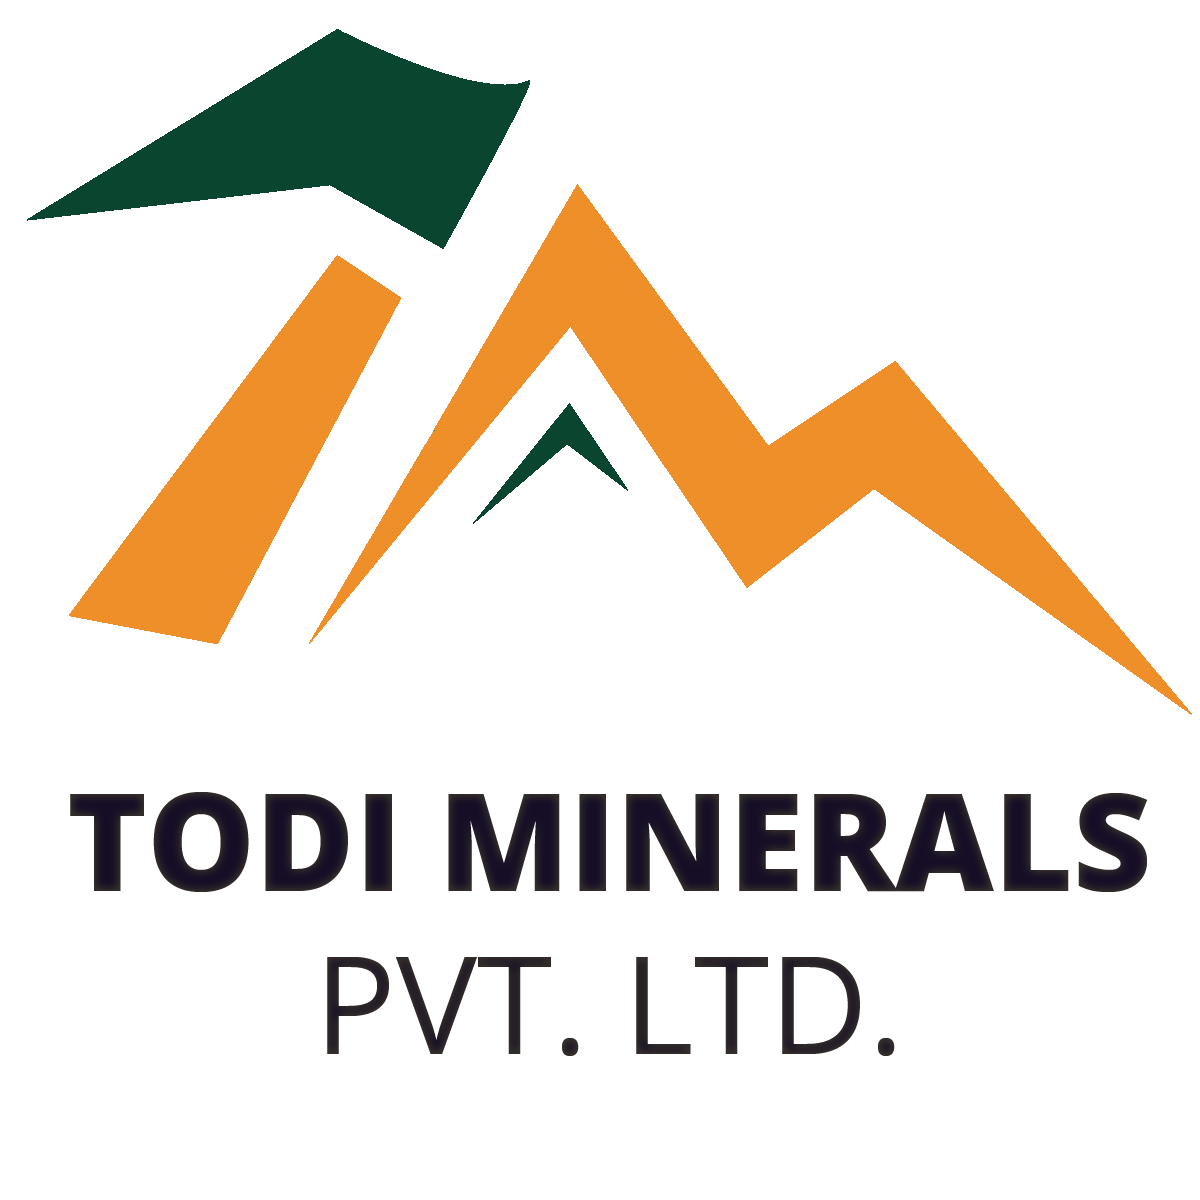 Todi Minerals PVT. LTD.